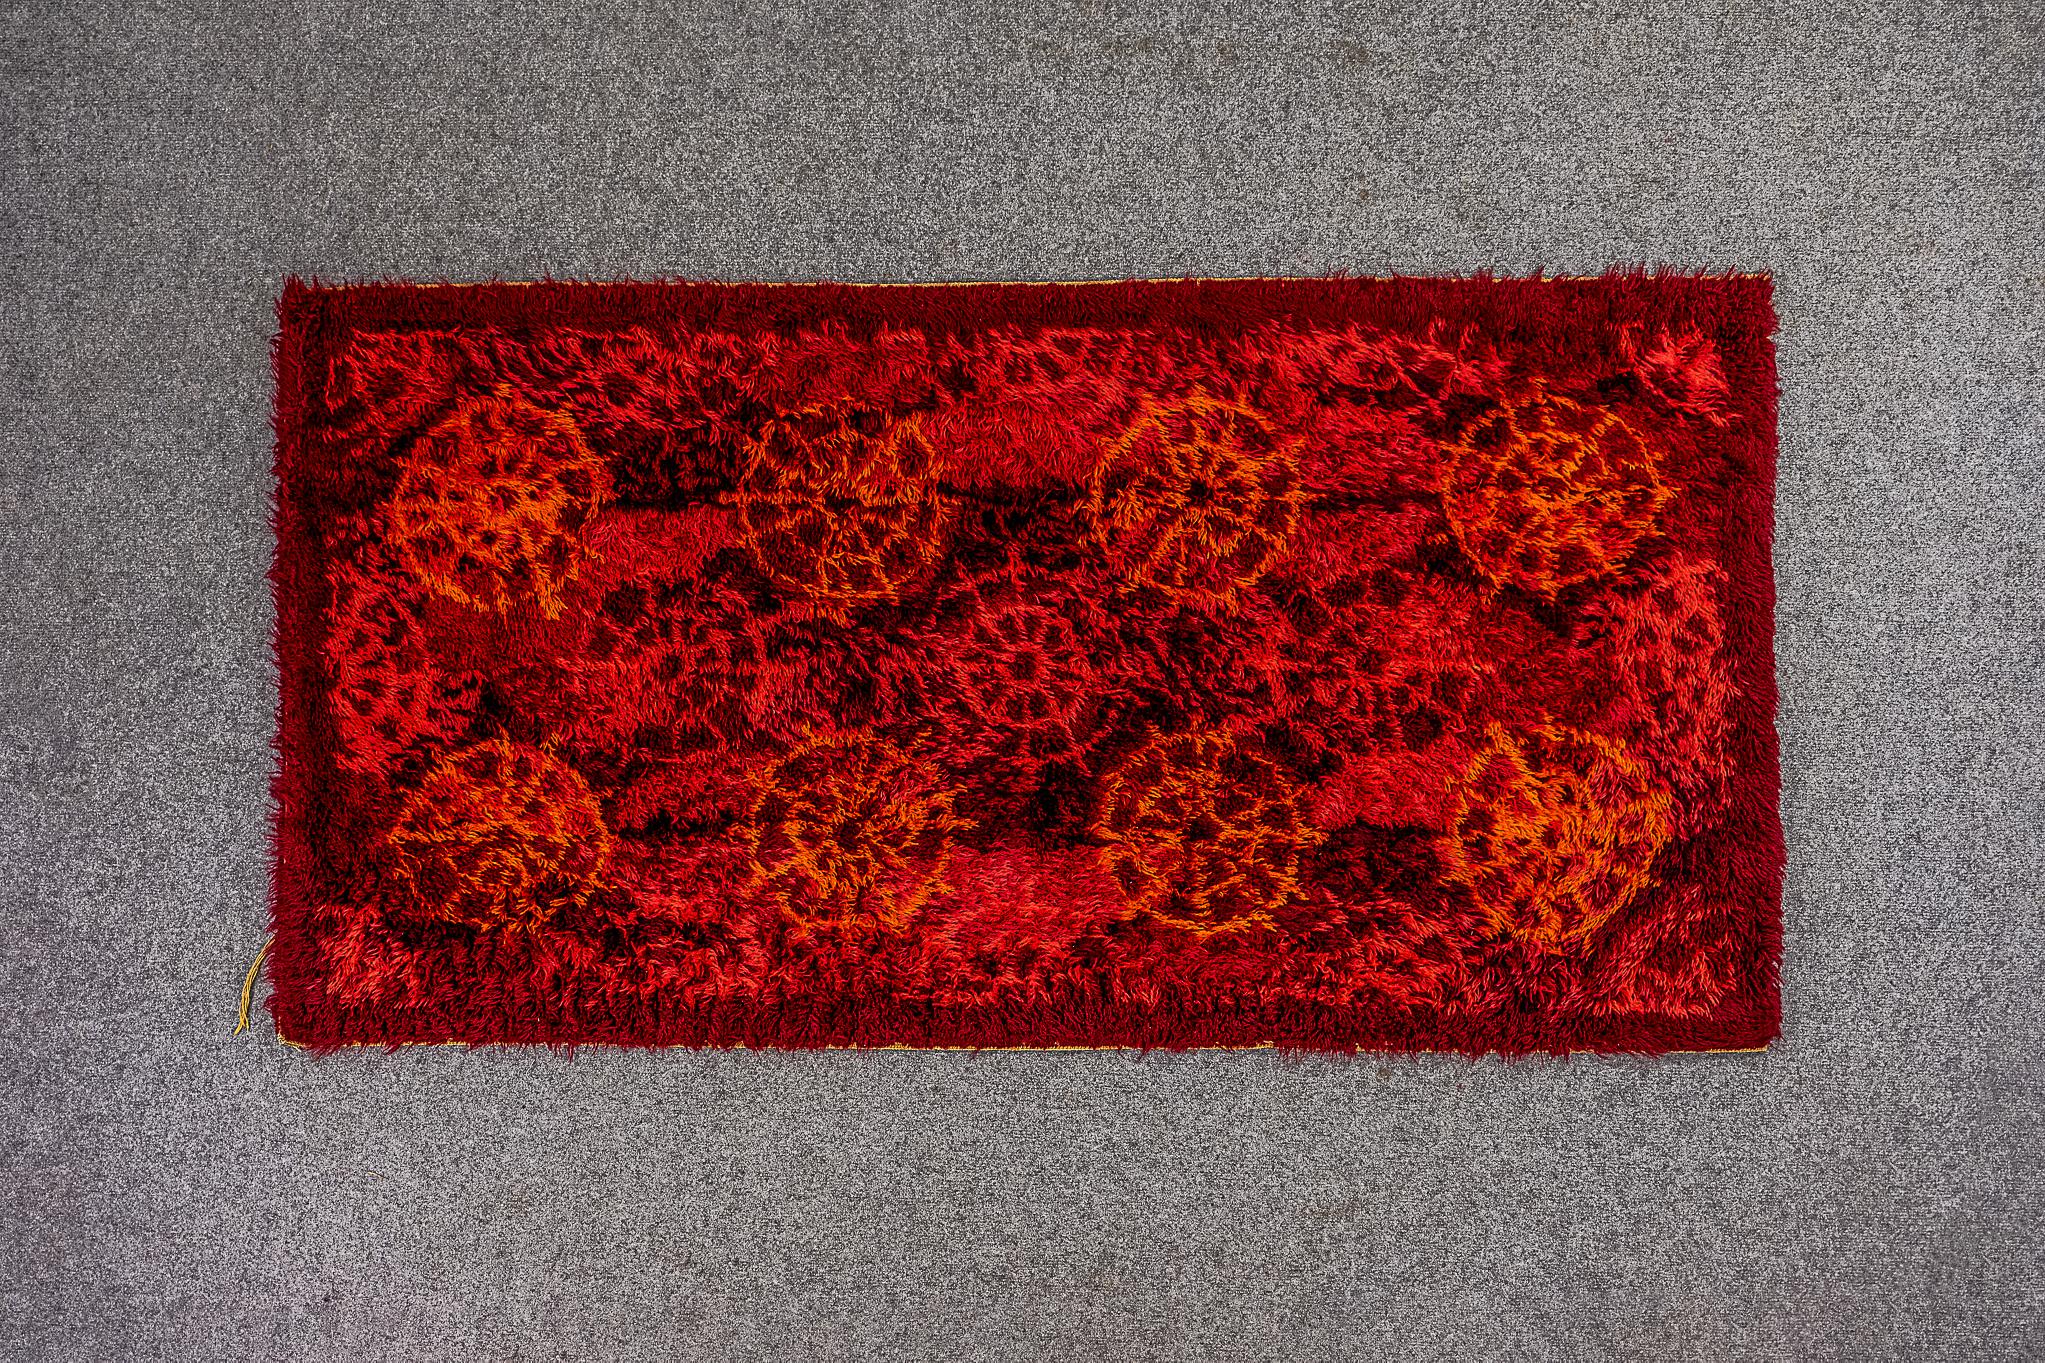 Skandinavischer Wollteppich, ca. 1960er Jahre. Der helle, auffällige Teppich kann als Wandverkleidung oder Bodenteppich verwendet werden. Der Teppich zeigt ein rhythmisches, abstraktes Raddesign in den Farben Rot und Kastanienbraun. Schöner